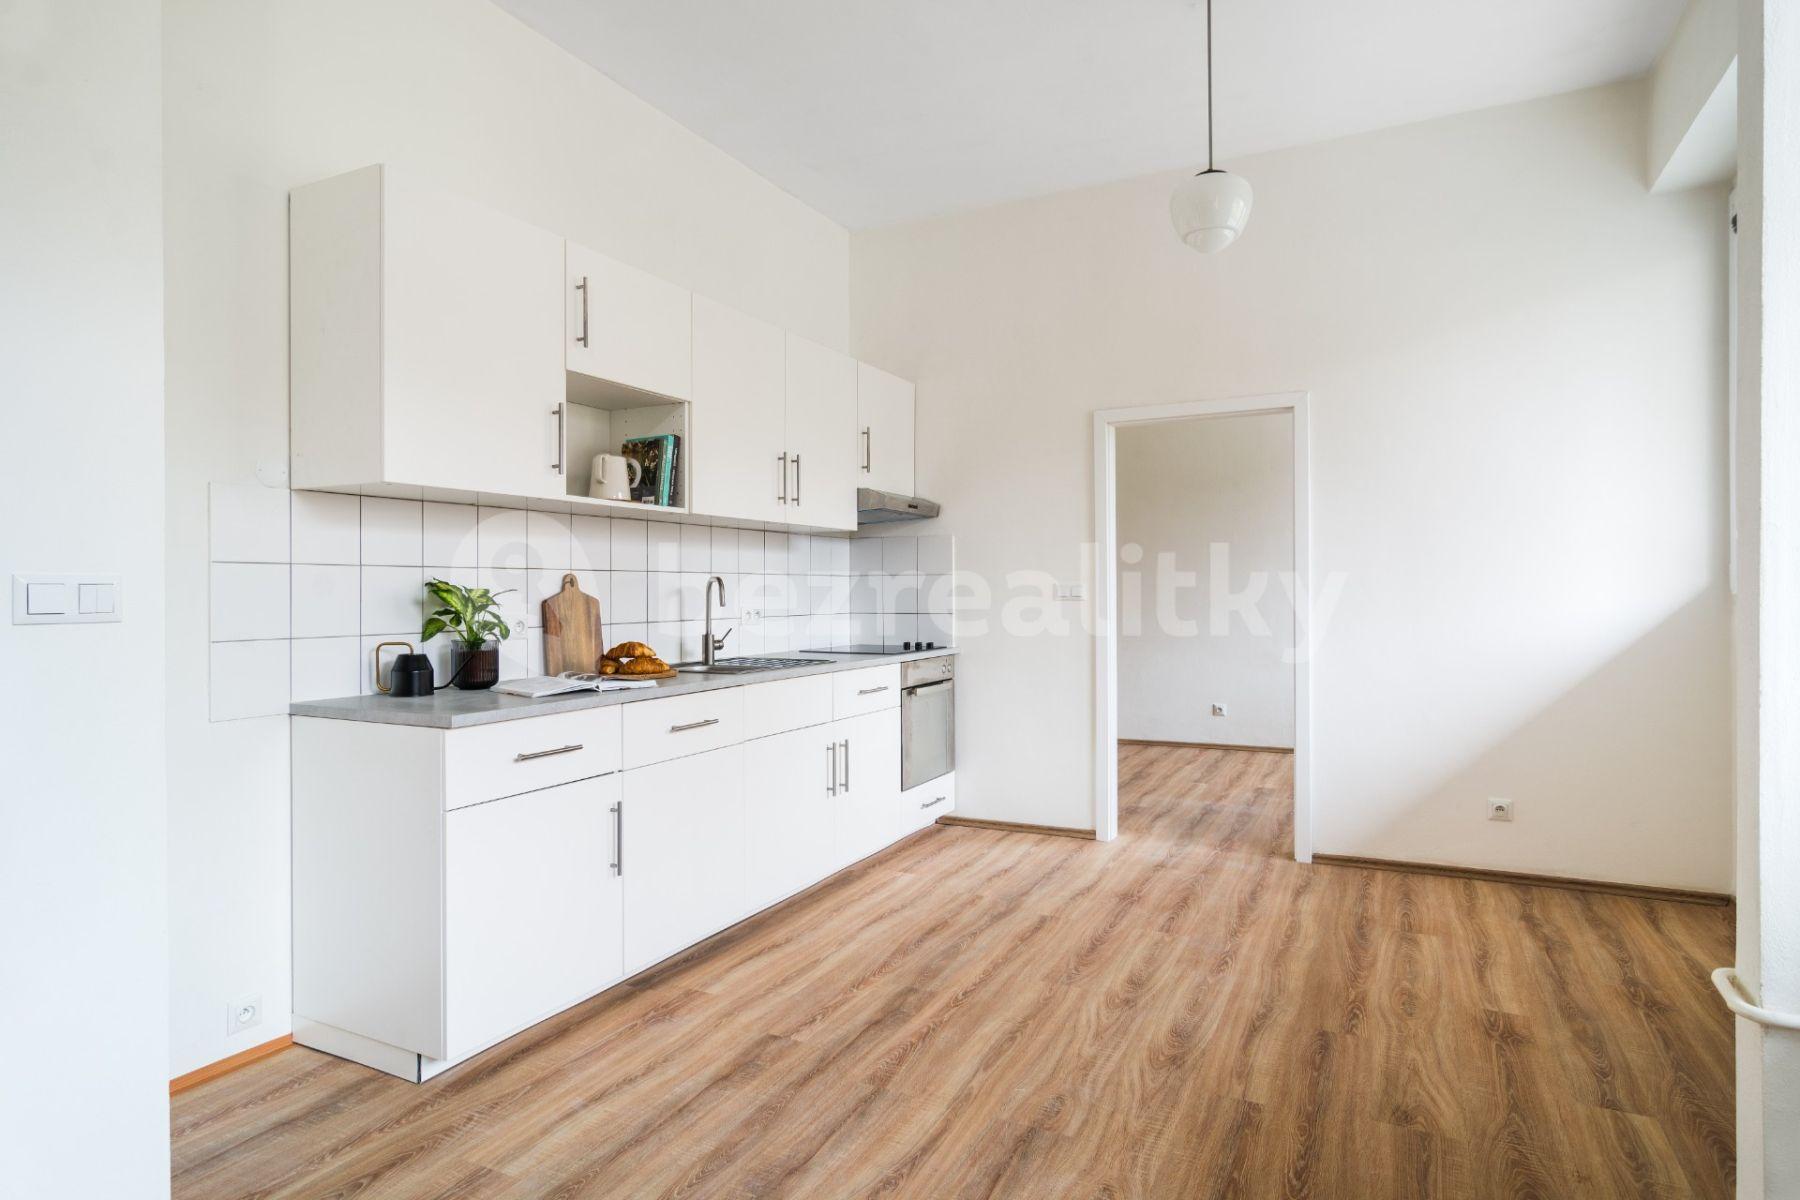 1 bedroom with open-plan kitchen flat for sale, 45 m², náměstí Sítná, Kladno, Středočeský Region